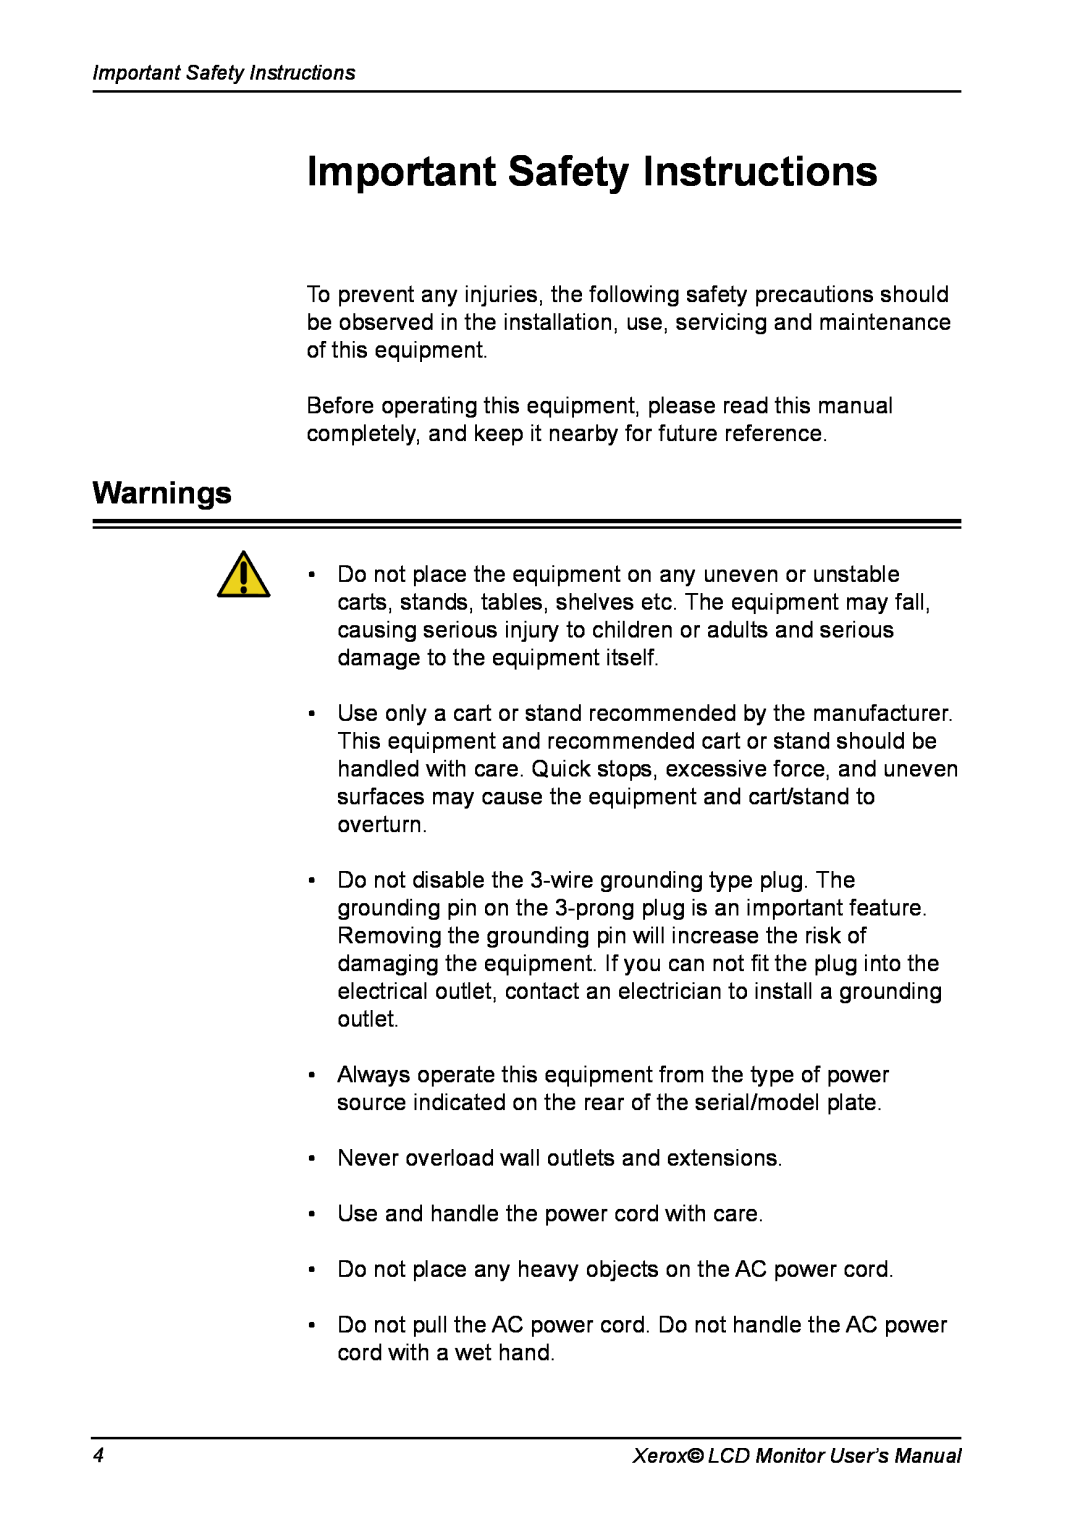 Xerox XA7-19i manual Important Safety Instructions, Warnings 